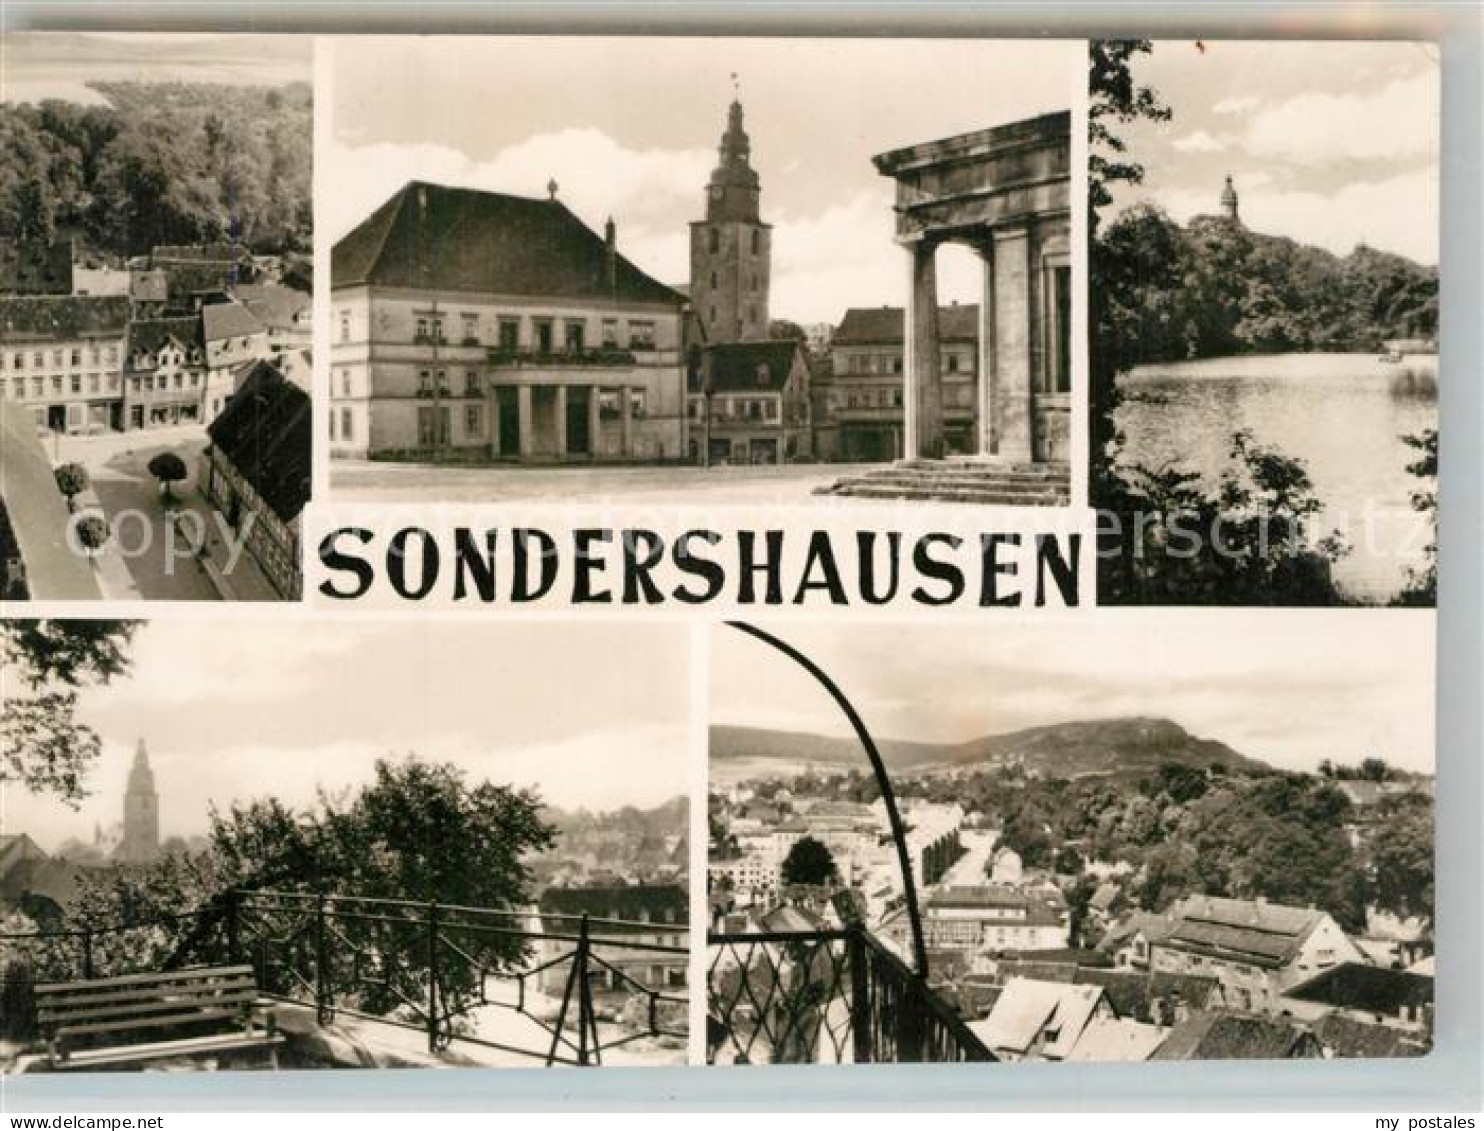 43343712 Sondershausen Thueringen Teilansicht Markt Rathaus Schloss Teilansicht  - Sondershausen